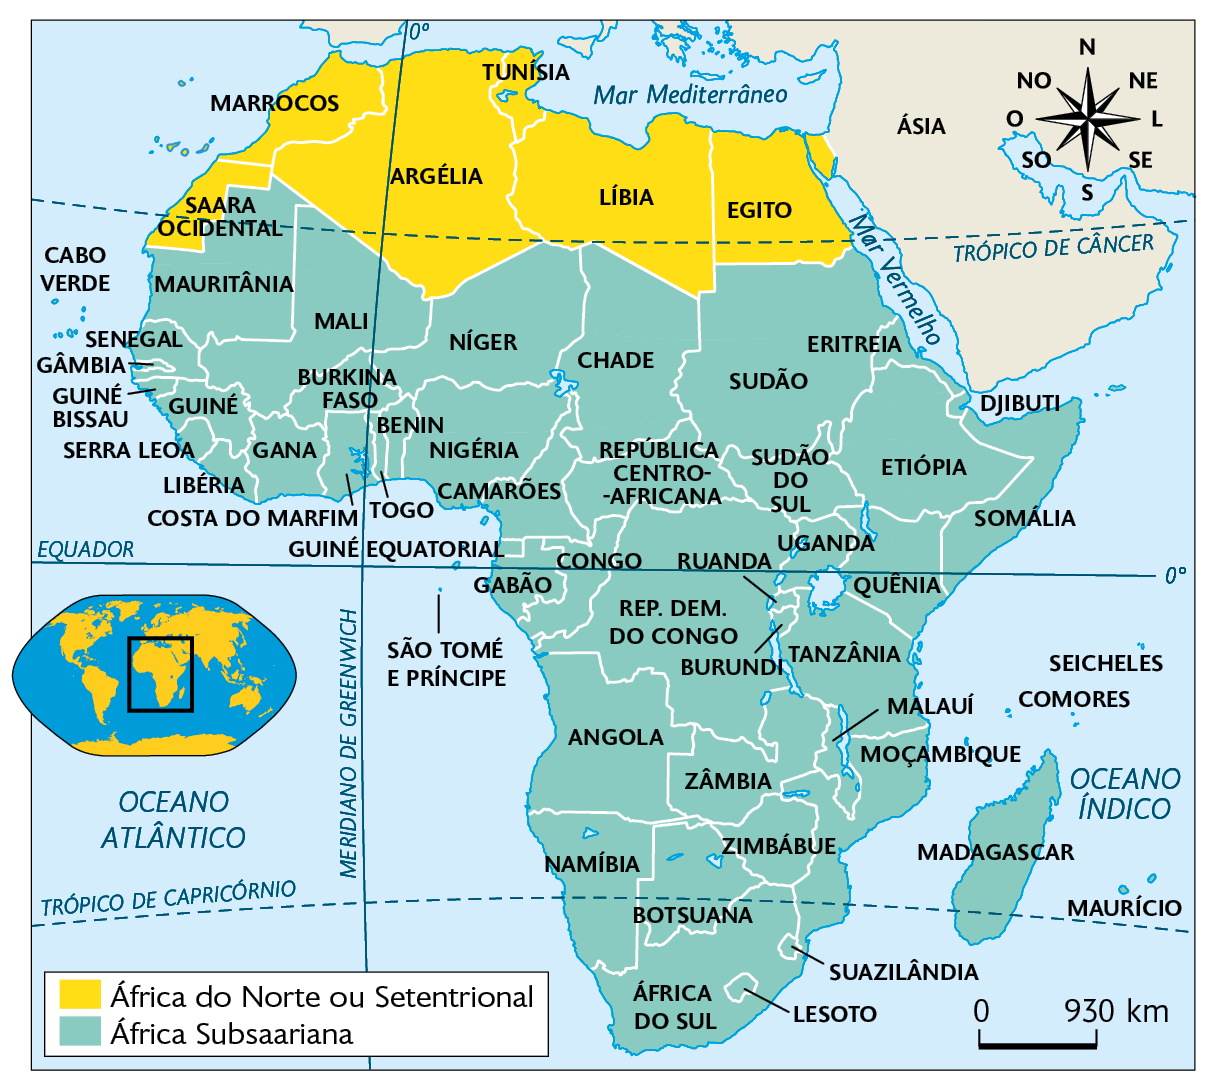 Mapa. Regionalização étnico-cultural africana. África do Norte ou Setentrional: Saara Ocidental, Marrocos, Argélia, Tunísia, Líbia e Egito. África Subsaariana: Cabo Verde, Senegal, Gâmbia, Guiné Bissau, Serra Leoa, Libéria, Mali, Burkina Faso, Guiné, Ganas, Costa do Marfim, Togo, Níger, Benin, Nigéria, Camarões, Chade, Sudão, Eritreia, Sudão do Sul, Etiópia, Djibuti, Guiné Equatorial, São Tomé e Príncipe, Gabão, Congo, República Centro-Africana, Somália, Quênia, Uganda, Ruanda, República Democrática do Congo, Burundi, Angola, Zâmbia, Malauí, Moçambique, Zimbábue, Namíbia, Botsuana, Suazilândia, Lesoto, África do Sul, Madagascar, Seicheles e Comores. À esquerda, mapa de localização, planisfério destacando a região descrita. No canto superior direito, a rosa dos ventos, e na parte inferior, a escala: 930 quilômetros por centímetro.